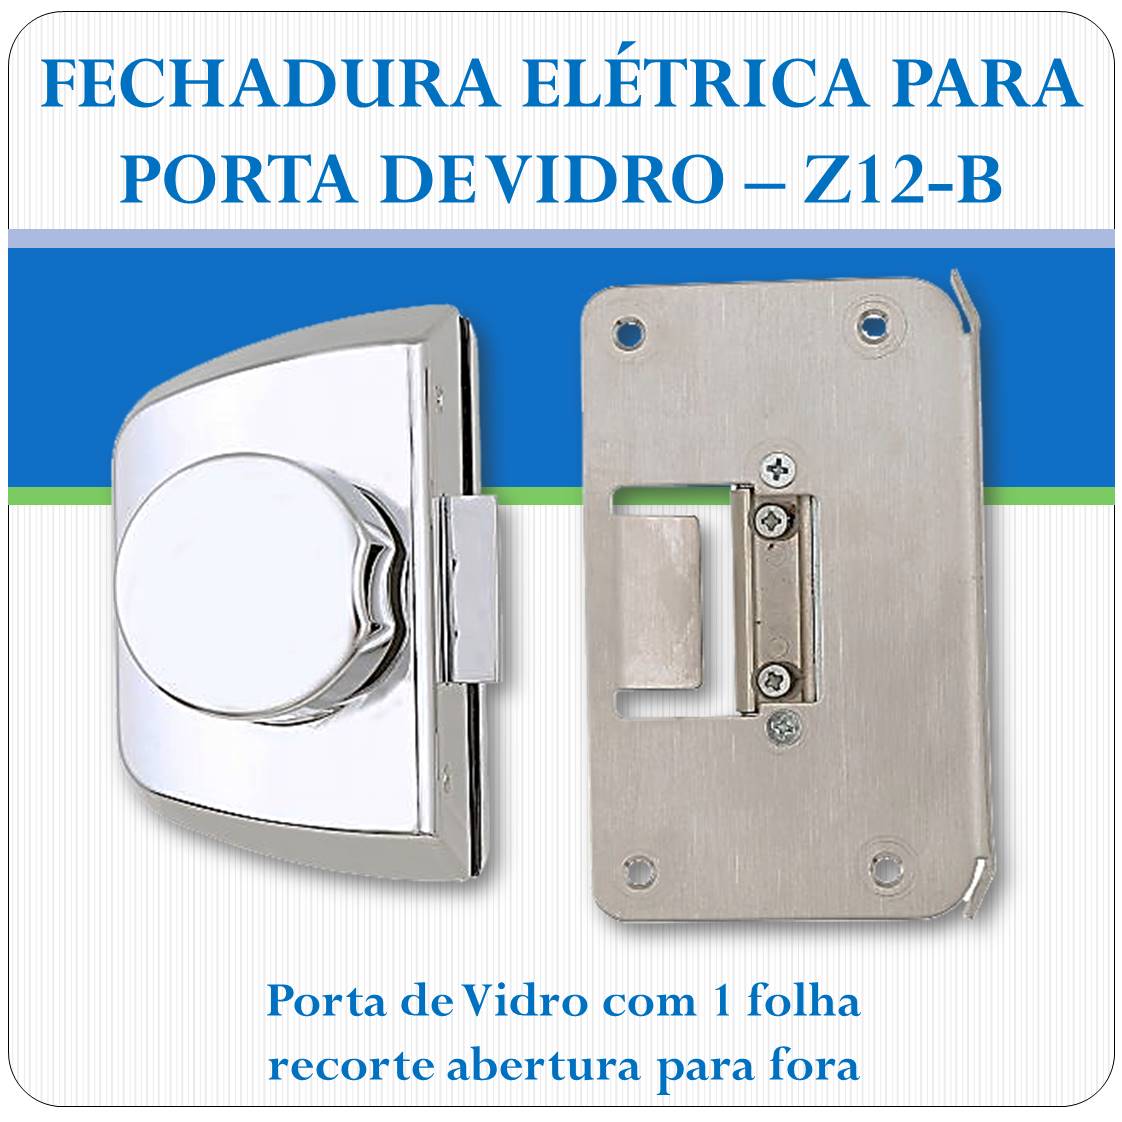 Fechadura Eletrica Porta de Vidro - Z-12B